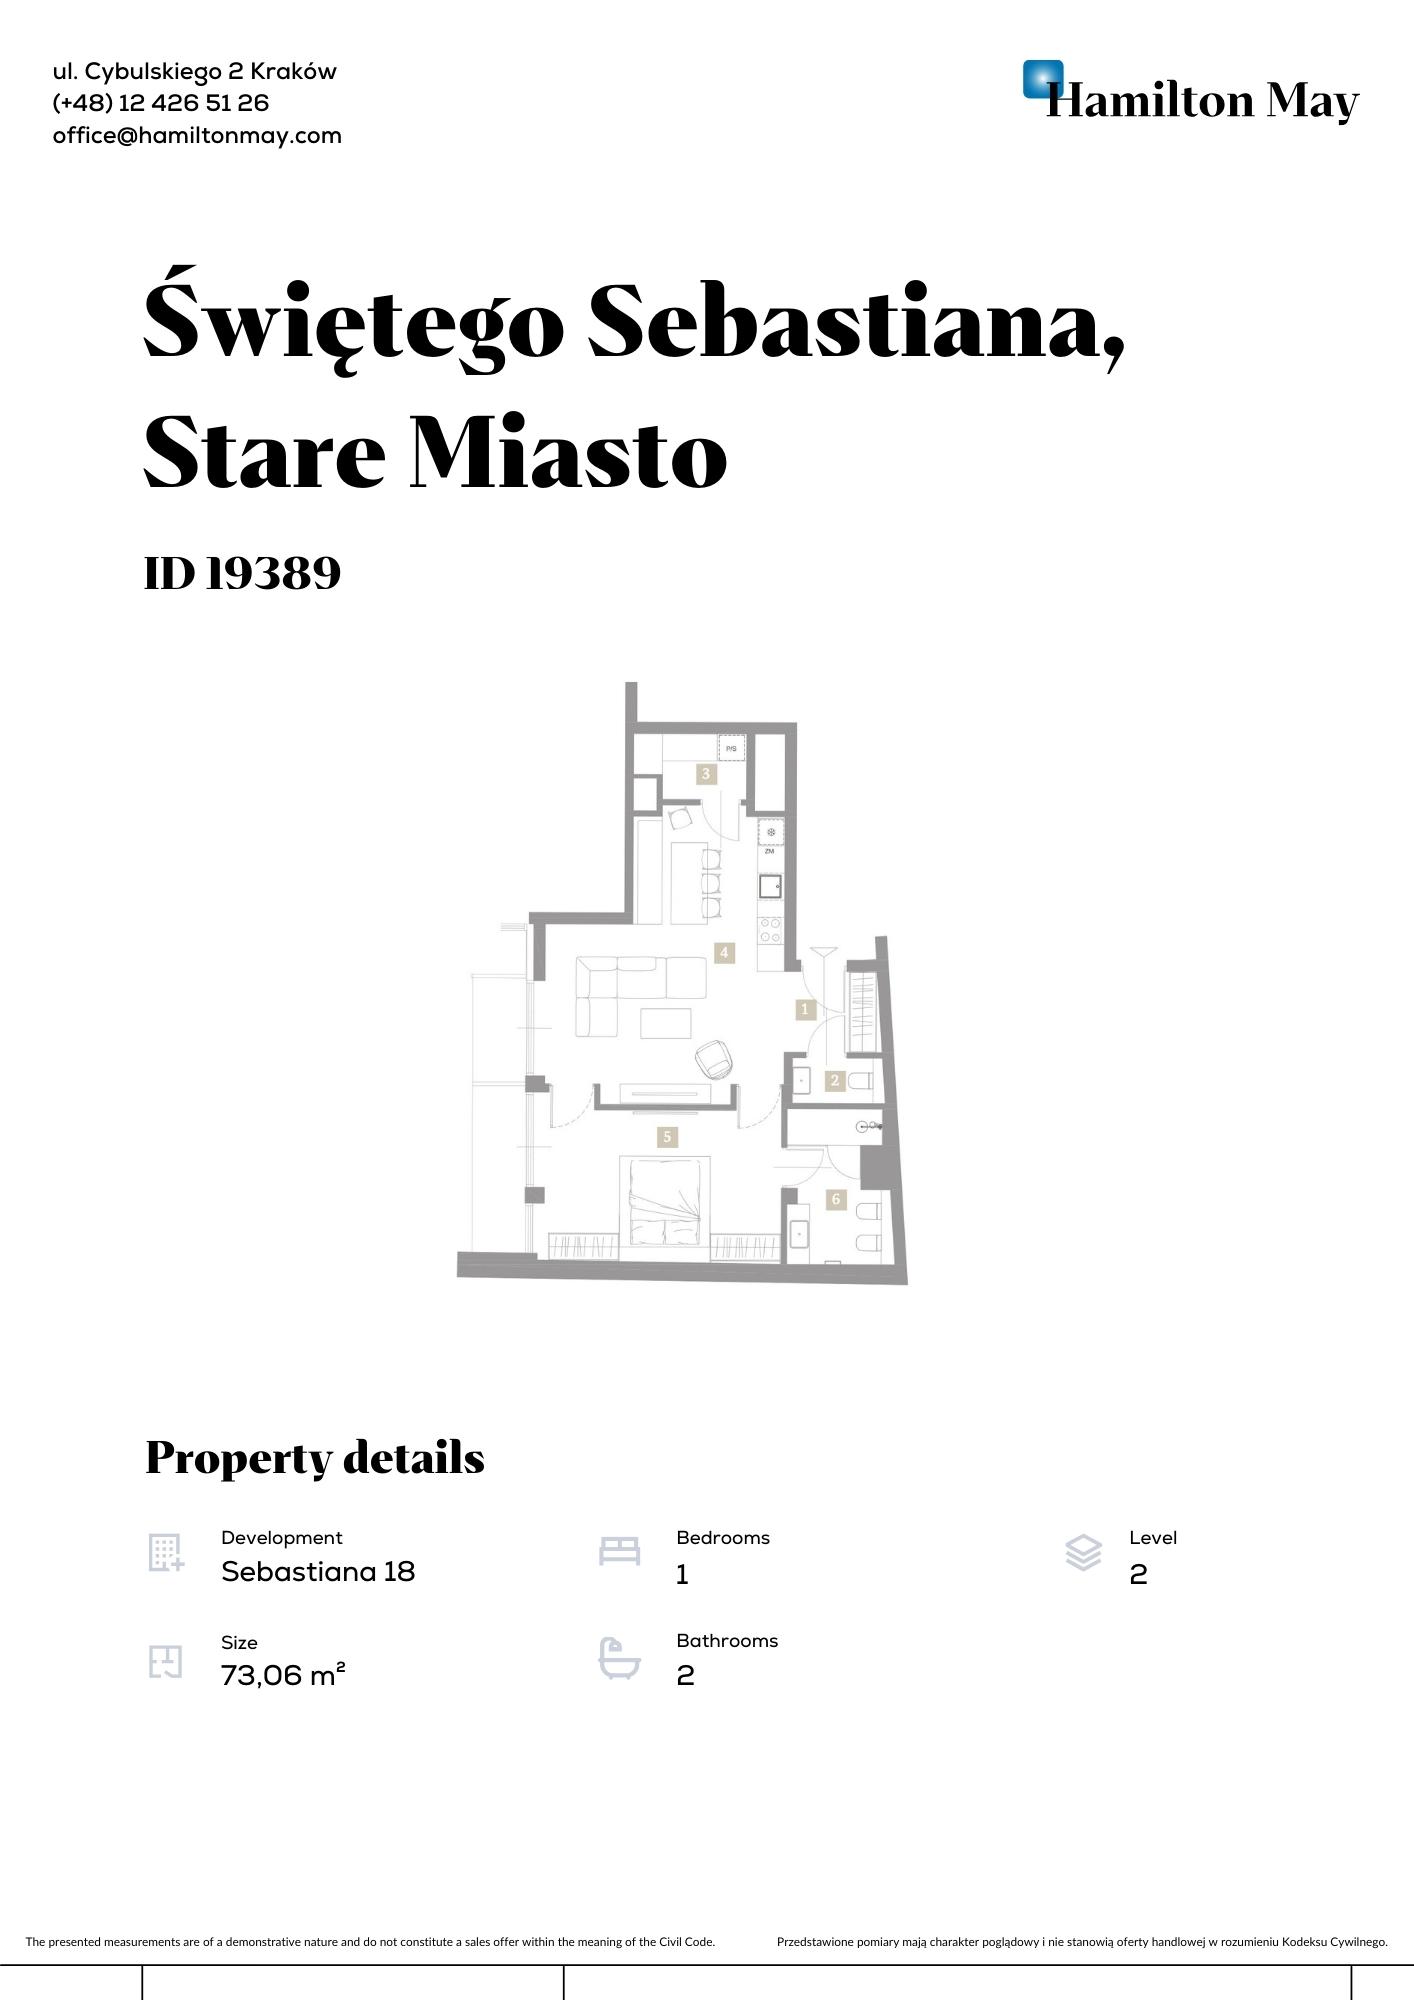 Spacious apartment with mezzanine in a prestigious investment at Św. Sebastiana 18 - plan